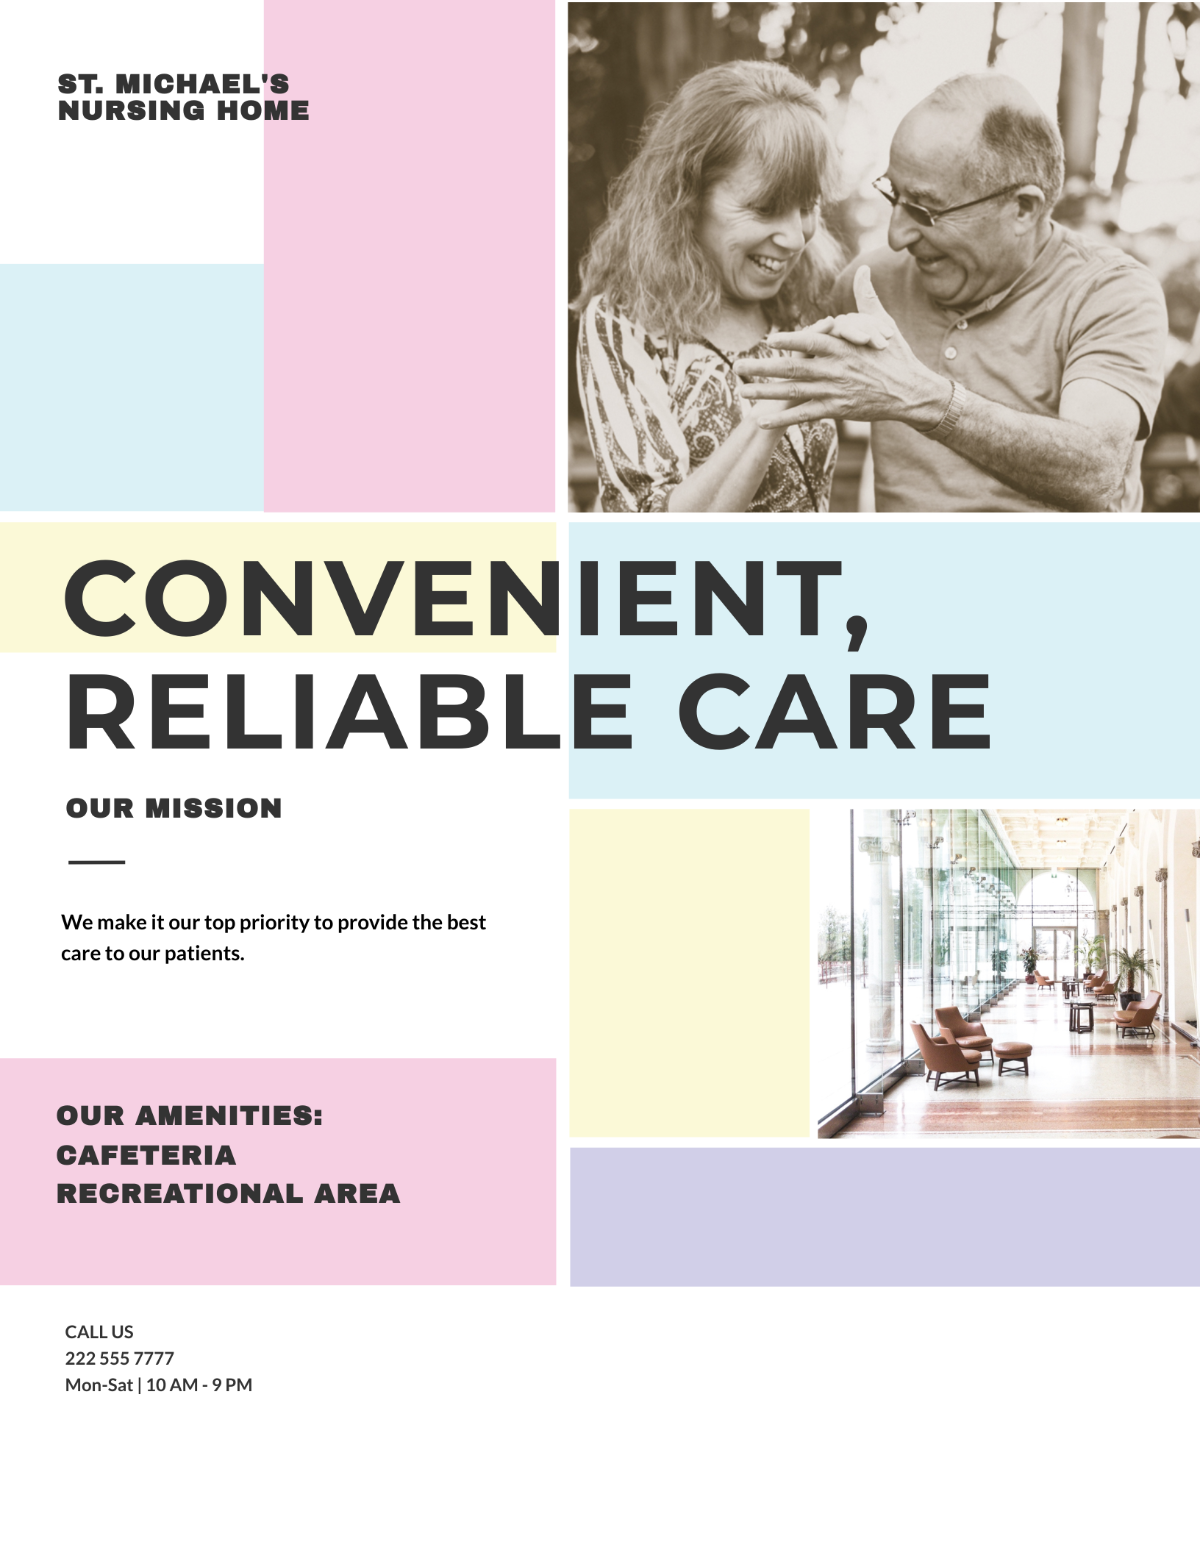 Nursing Home Care Flyer